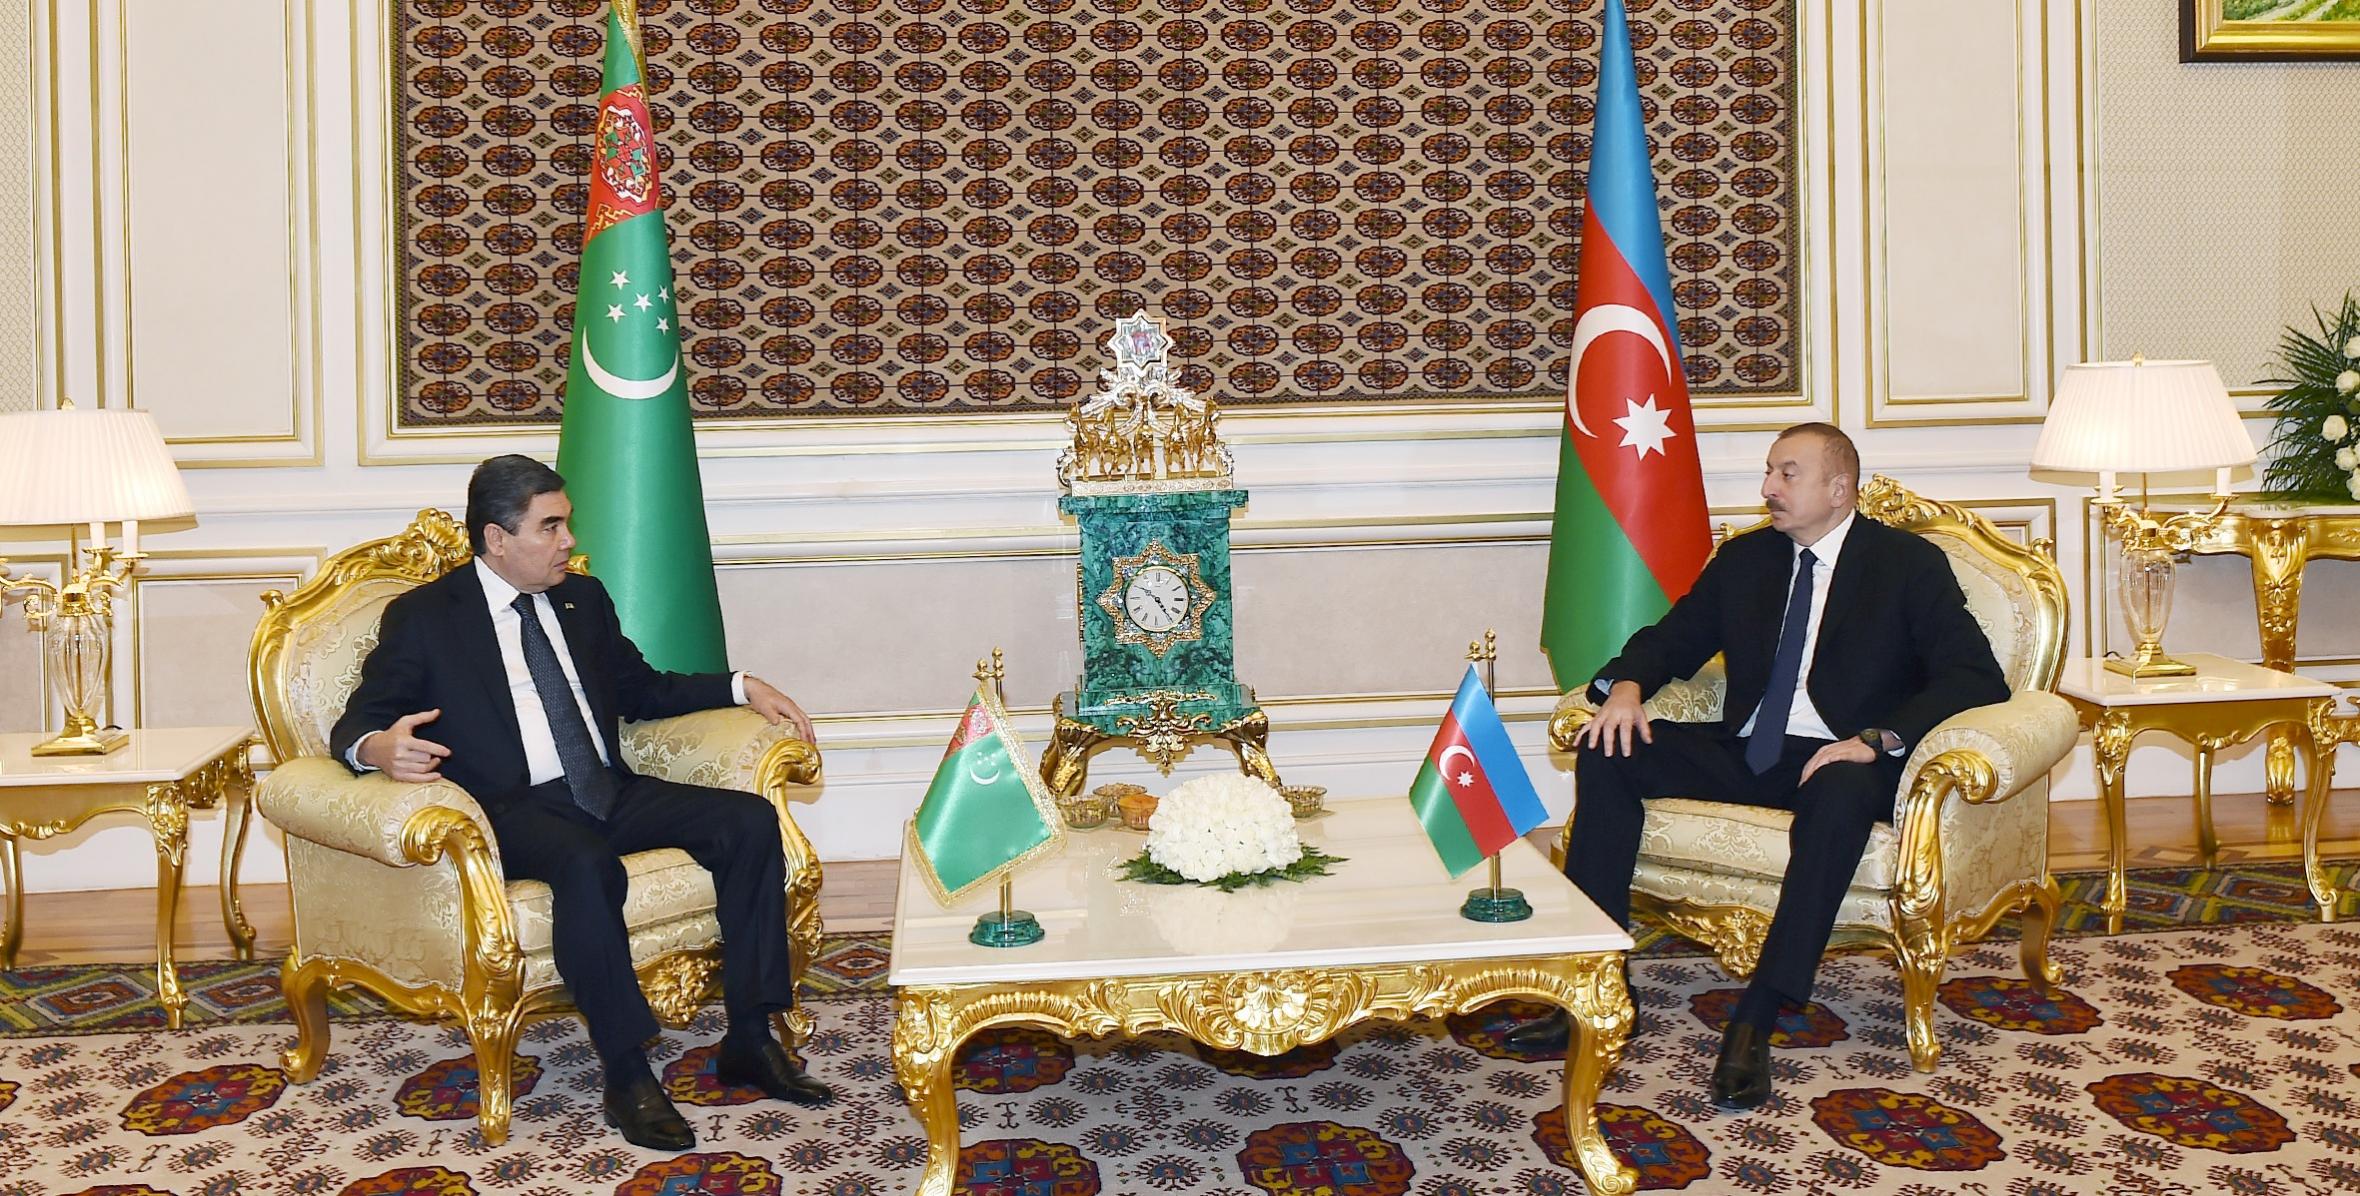 Состоялась встреча президентов Азербайджана и Туркменистана один на один